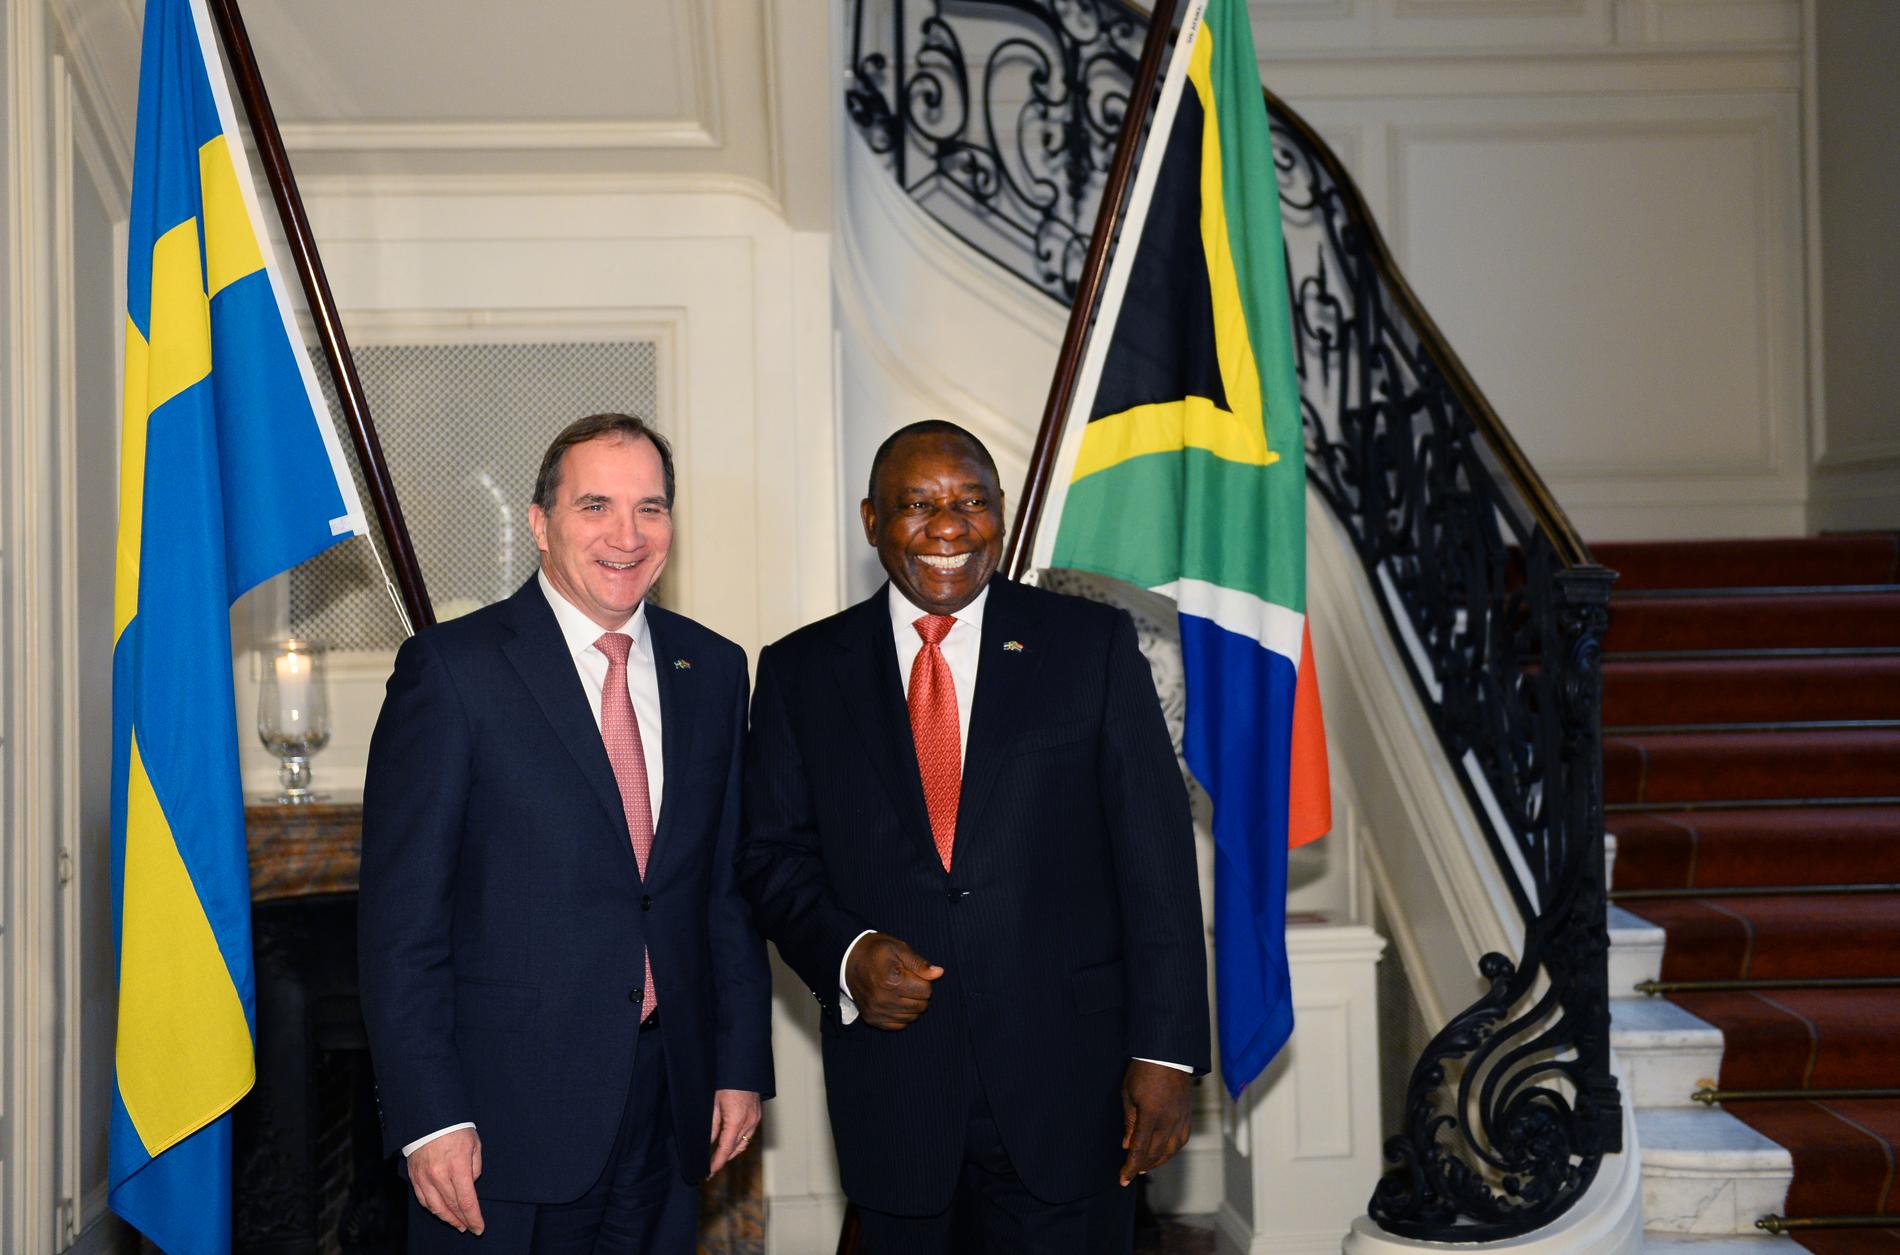 Statsminister Stefan Löfven och Sydafrikas president Cyril Ramaphosa, som då var vicepresident, under ett besök i Stockholm 2015. Arkivbild.